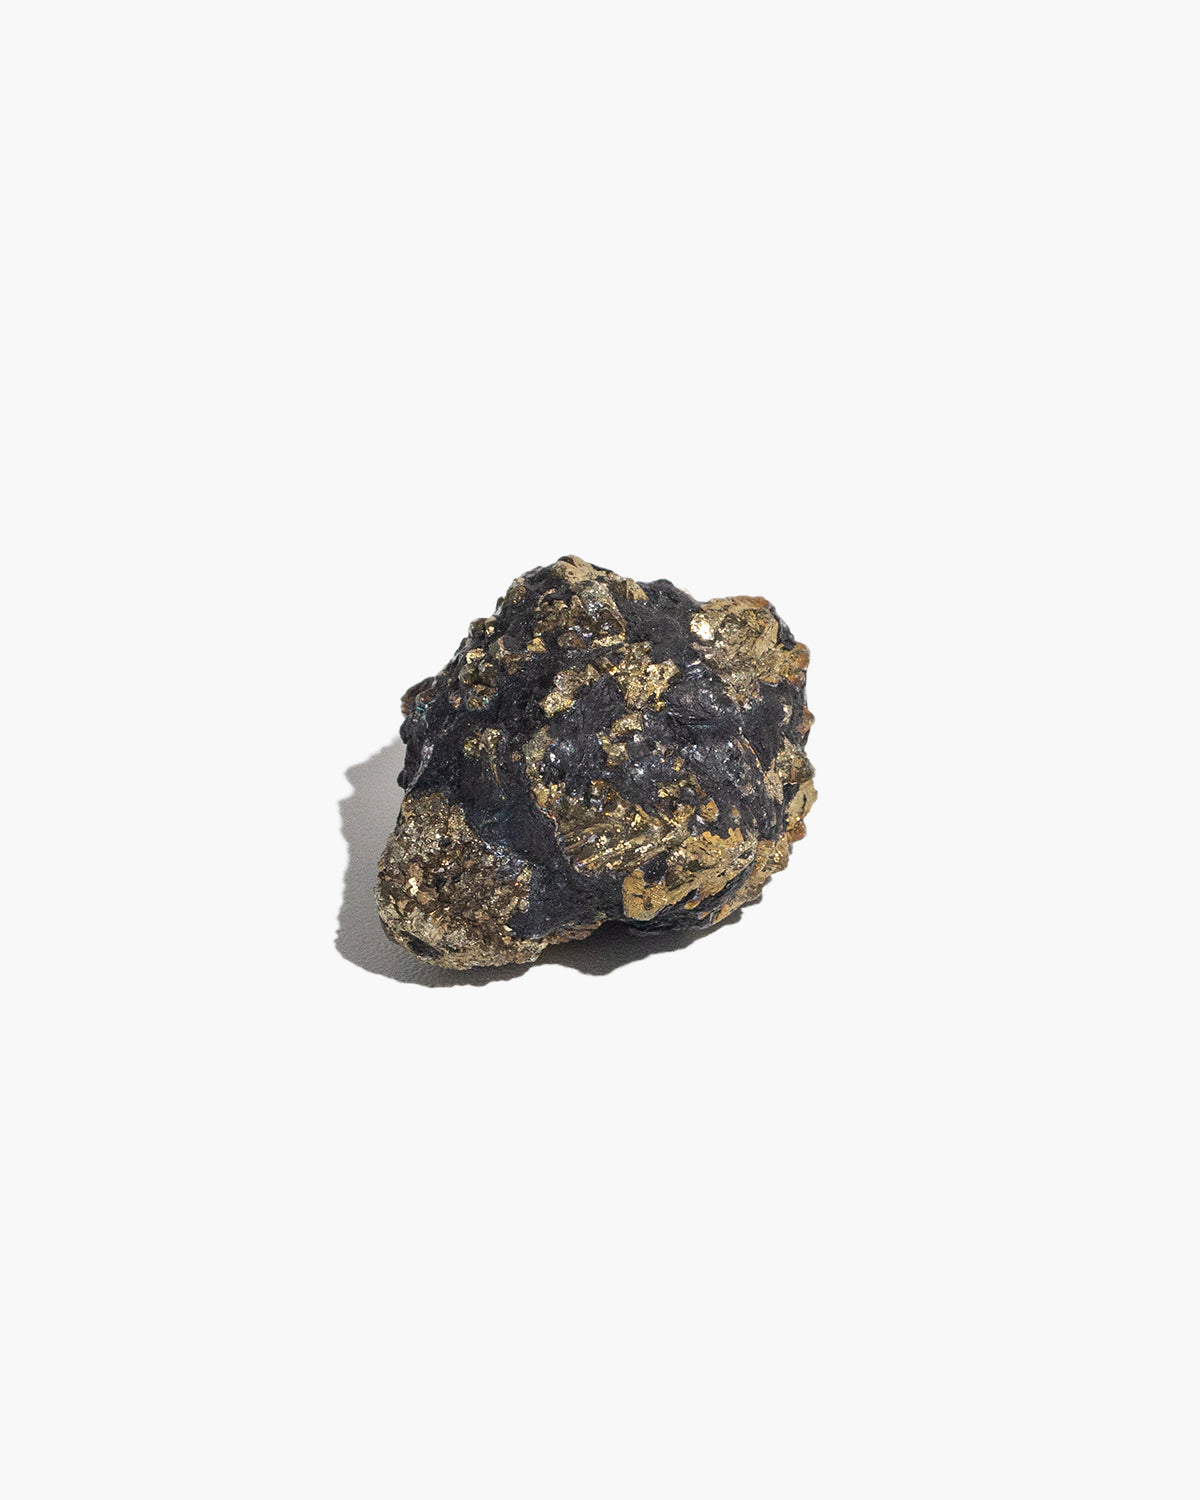 Super Nova Pyrite (Marcasite with Graphite) Cluster – N°03